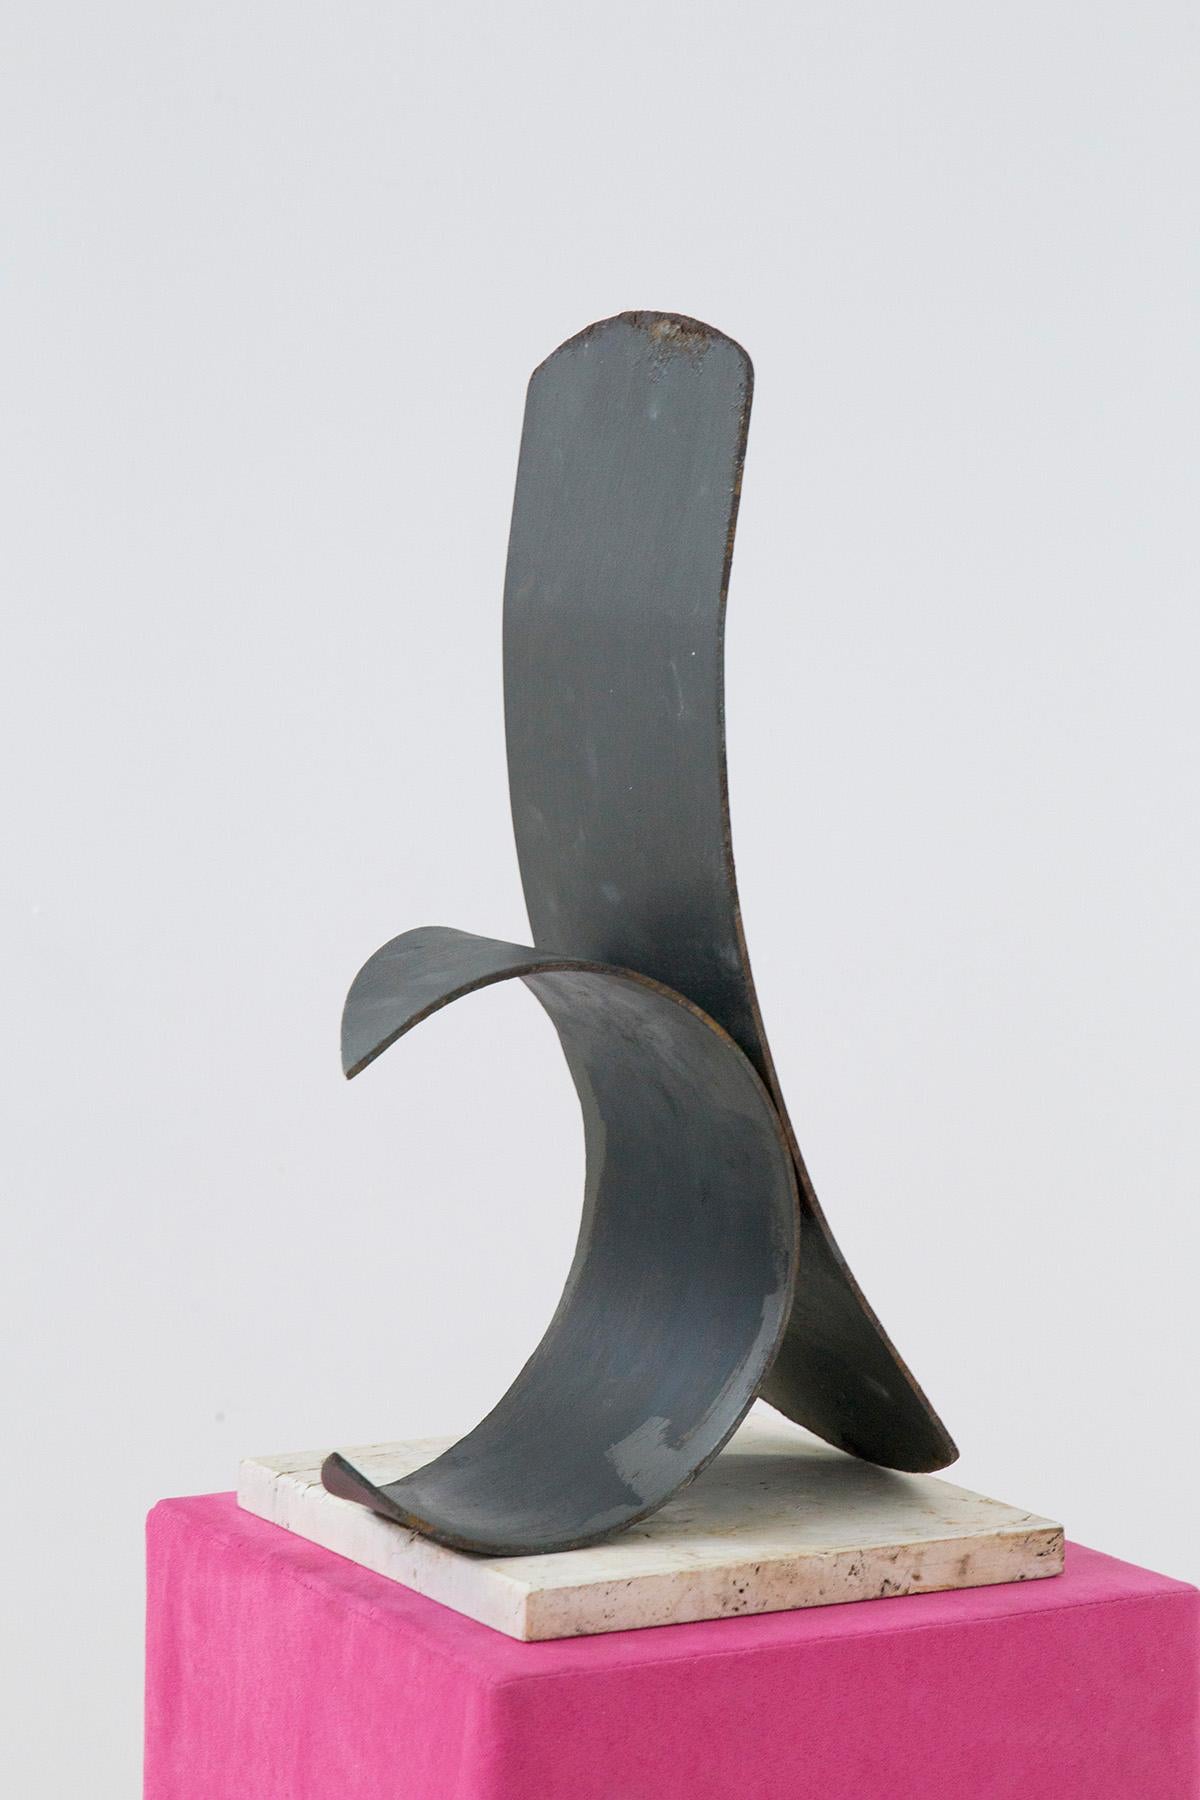 Sculpture d'Antonio Del Donno de 1991, numérotée : il s'agit de 12 sur 20 : 12/20. La sculpture est intitulée SANS TITRE. Fabriqué avec une base en travertin. Sous le socle en travertin, on trouve la signature de l'artiste et la numérotation.